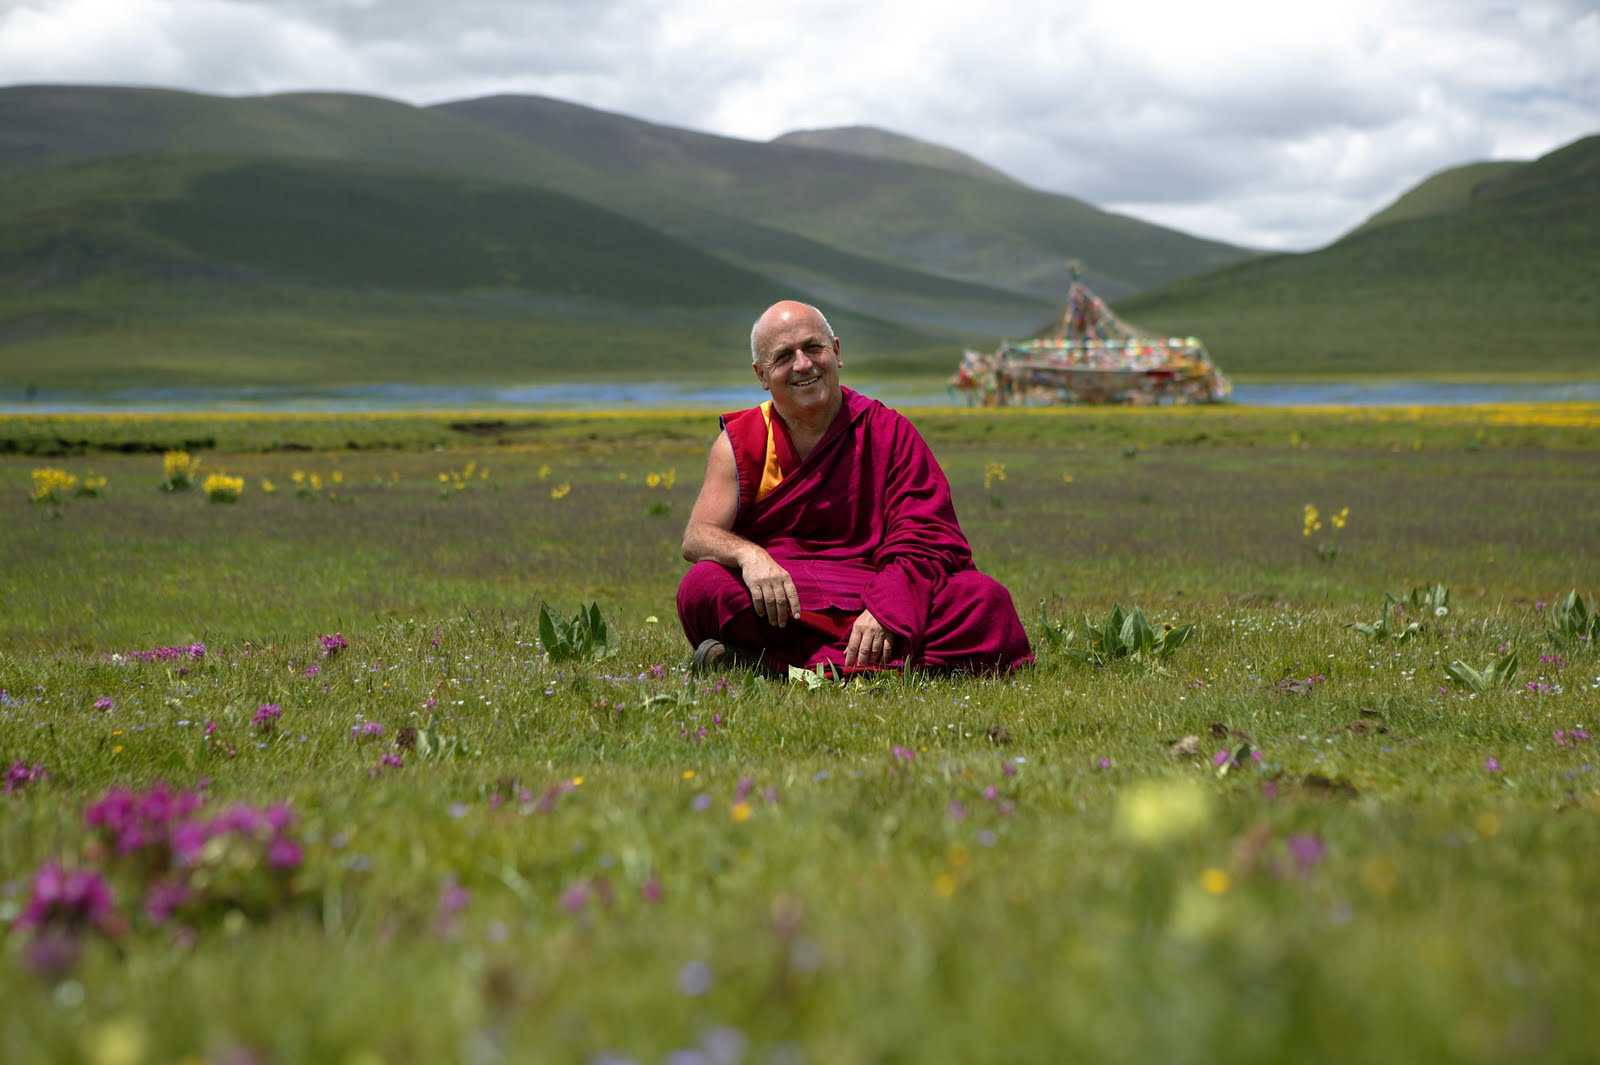 Тибетский монах медитирует